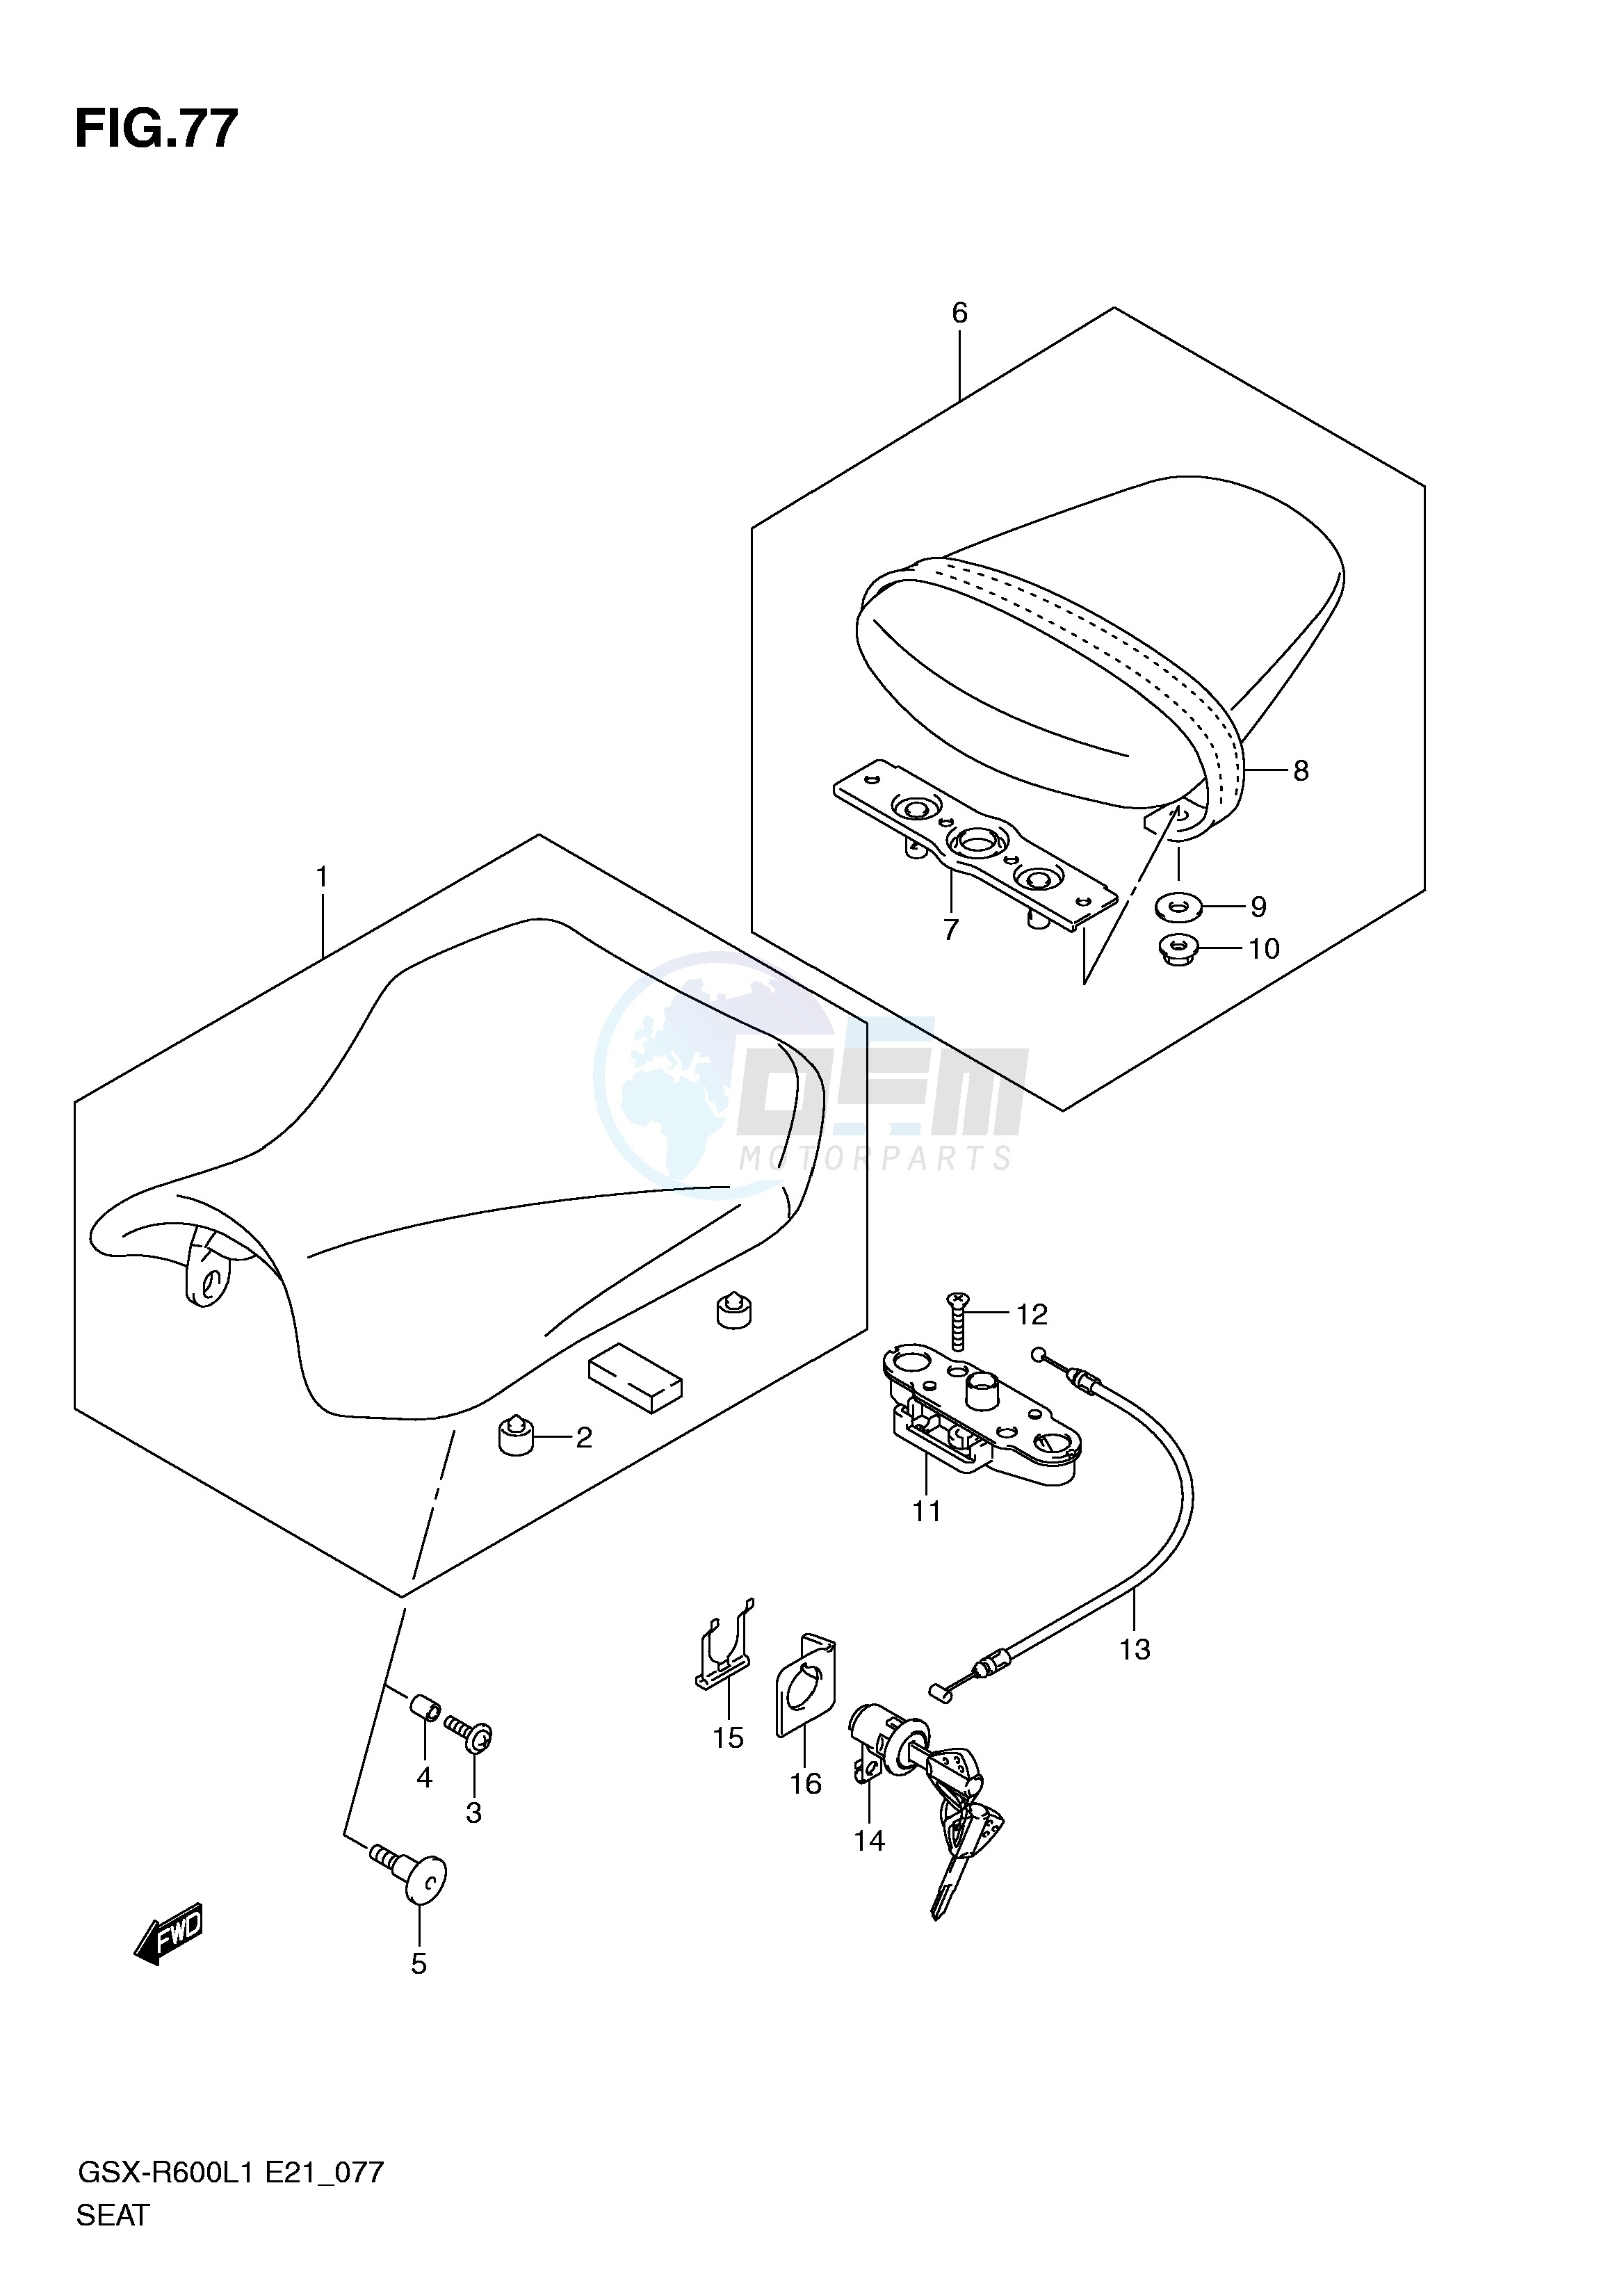 SEAT (GSX-R600UEL1 E21) blueprint